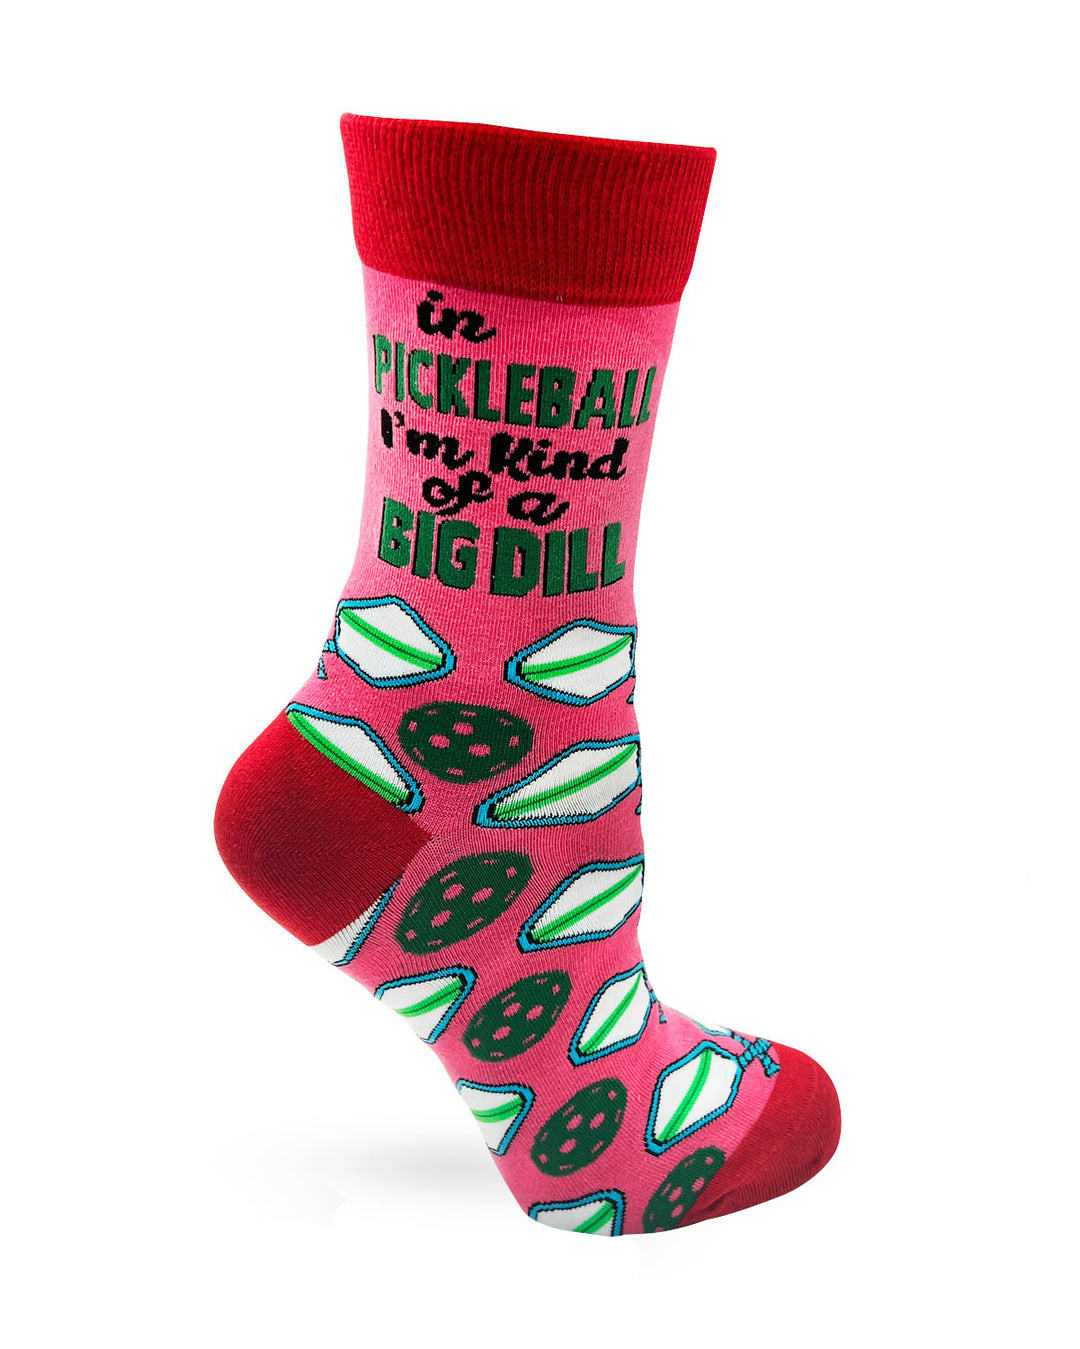 Pickleball Women's Crew Socks